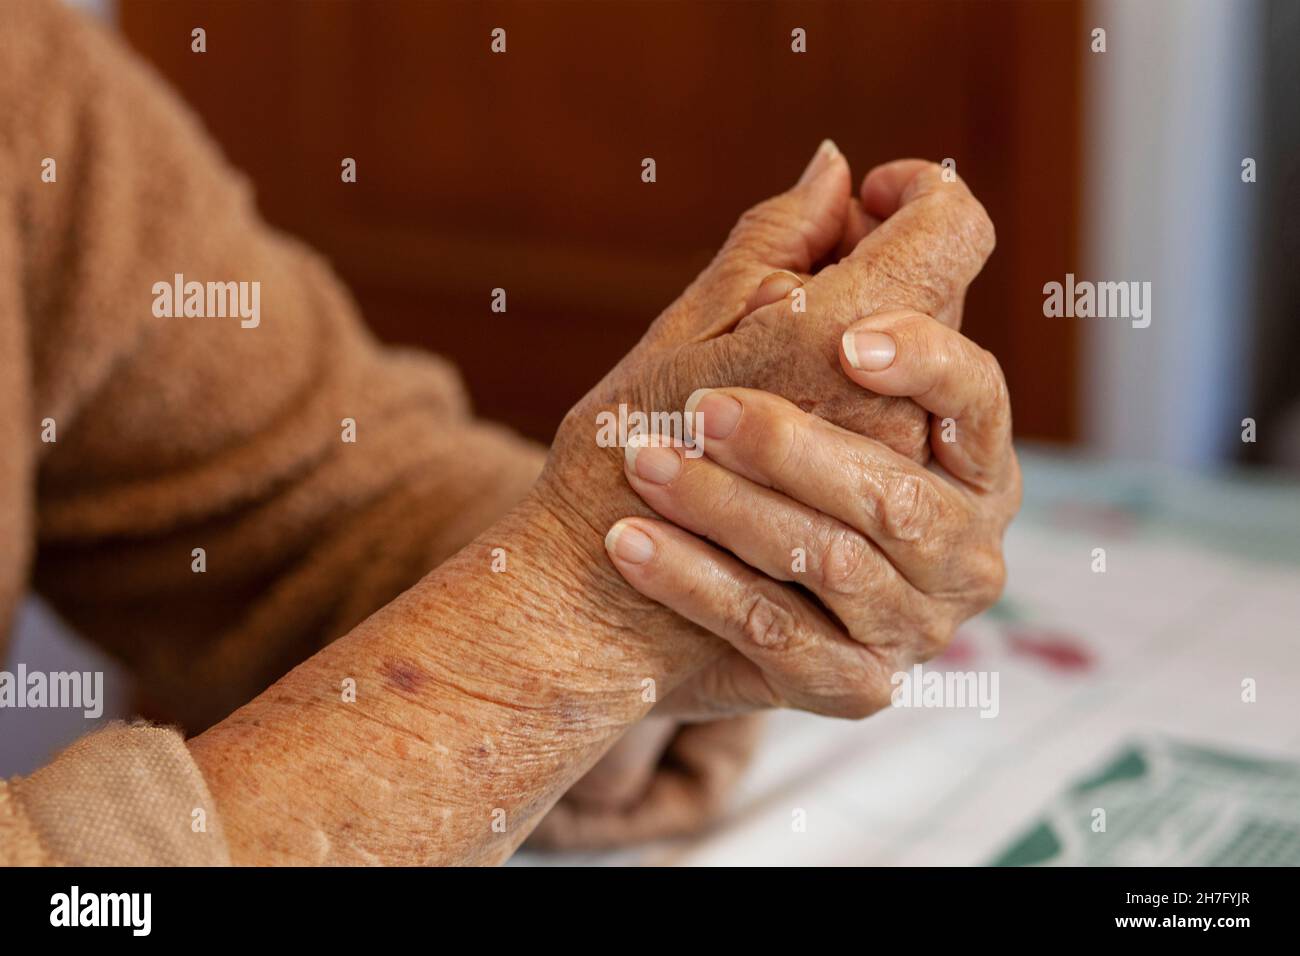 Eine Nahaufnahme der Hände einer älteren Frau, die Mr - Model umklammert, wurde veröffentlicht Stockfoto